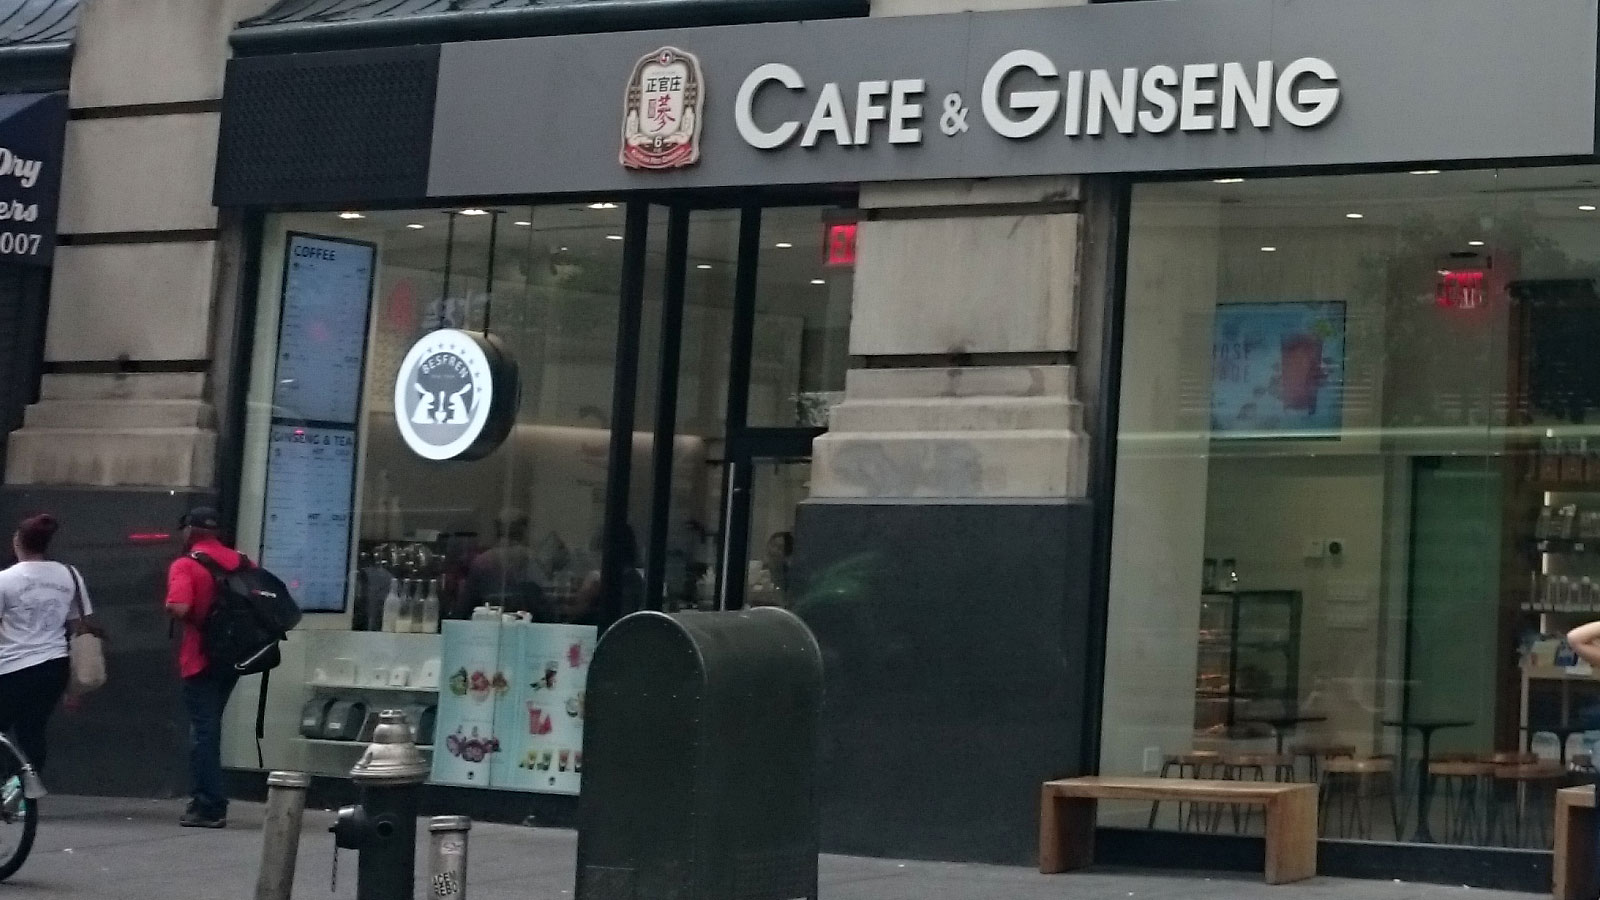 Cafe & Ginseng